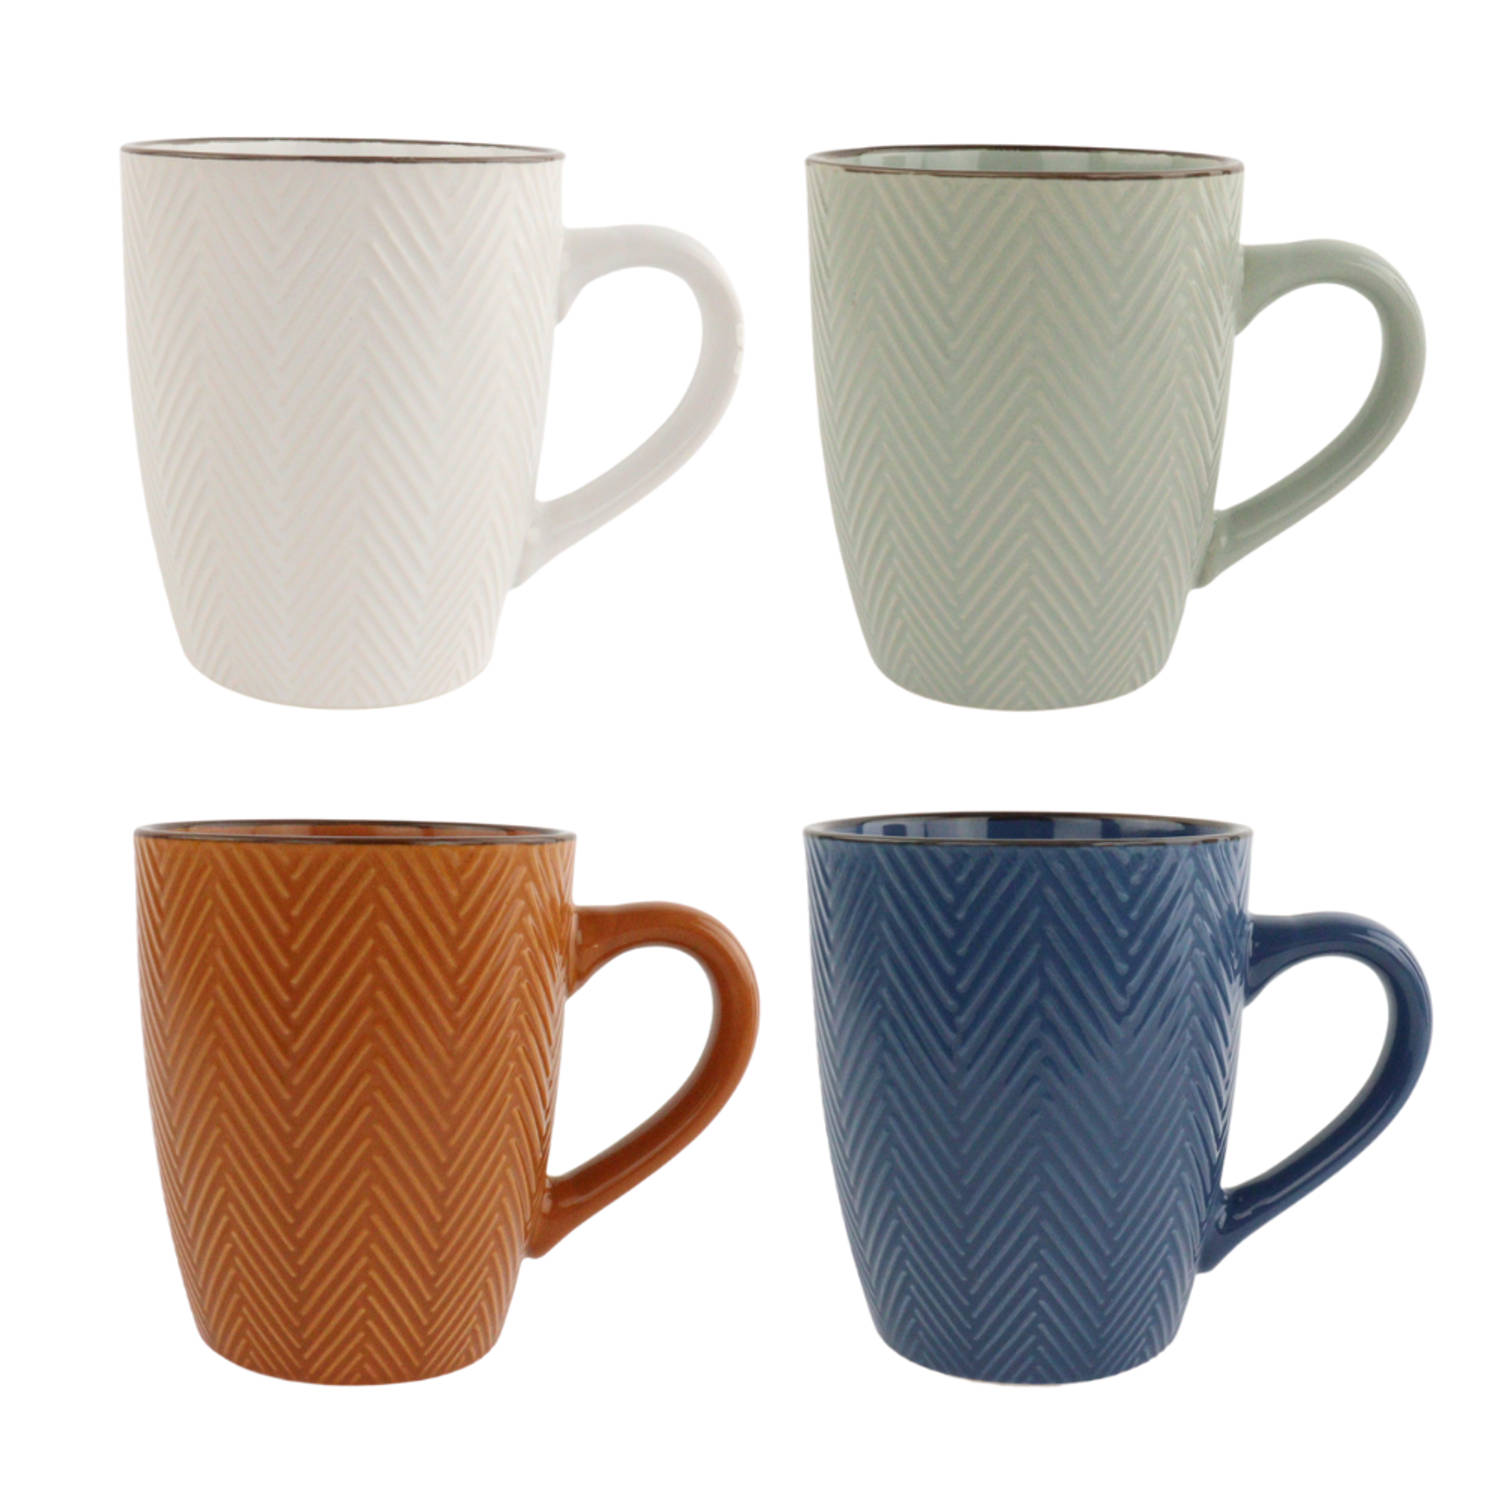 OTIX Koffiekopjes - met Oor - Koffietassen - Set van 4 - Verschillende kleuren - Aardewerk - 370 ml - HEATHER